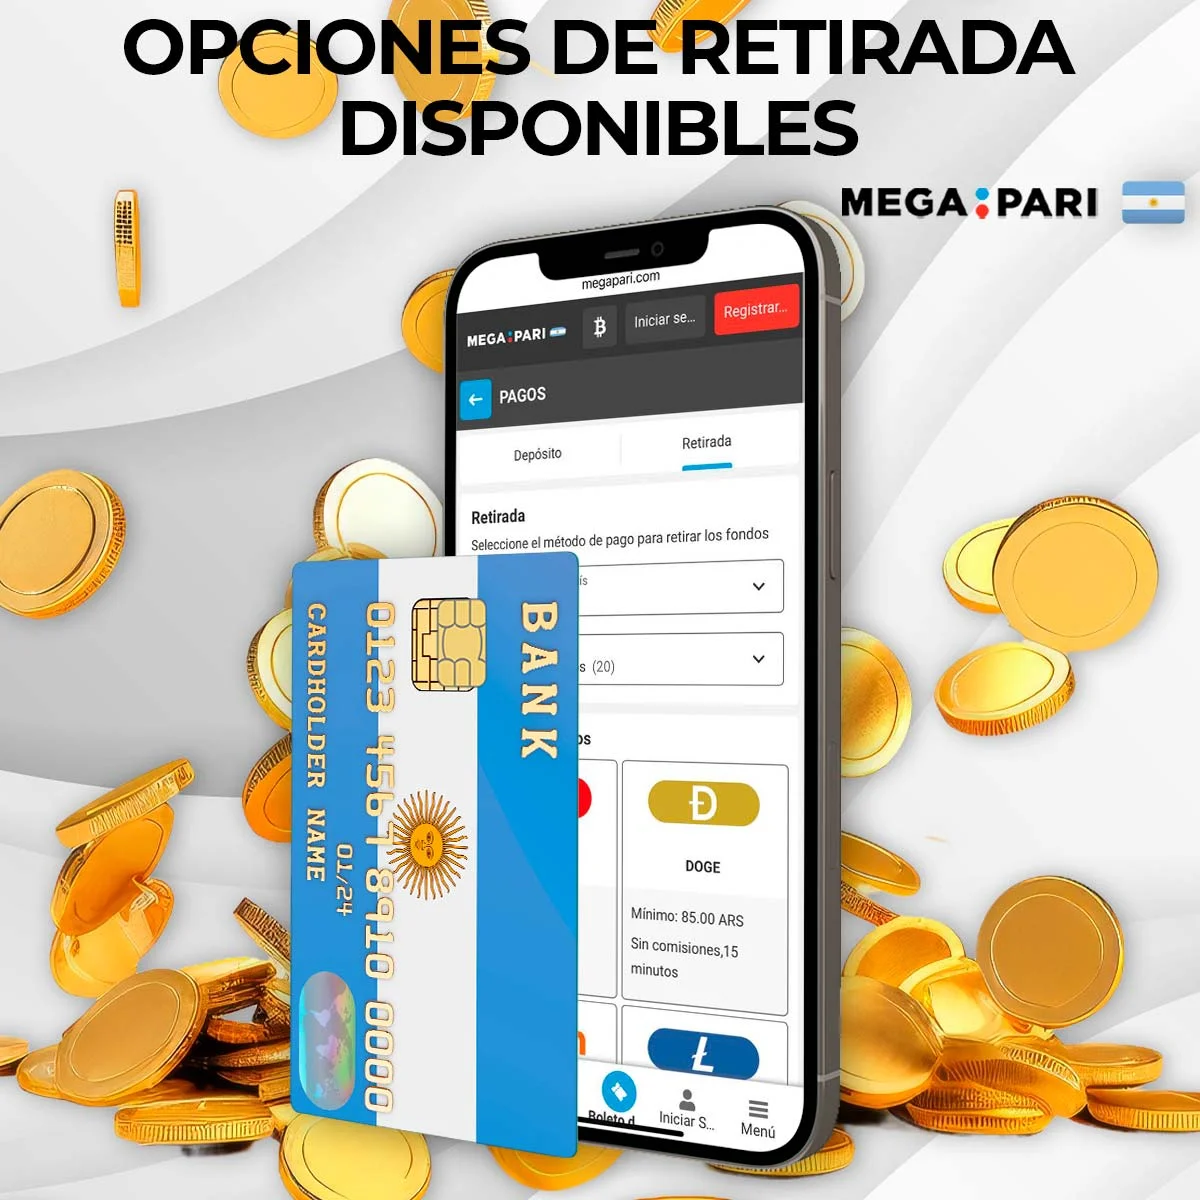 Métodos de retiro disponibles en Megapari Argentina